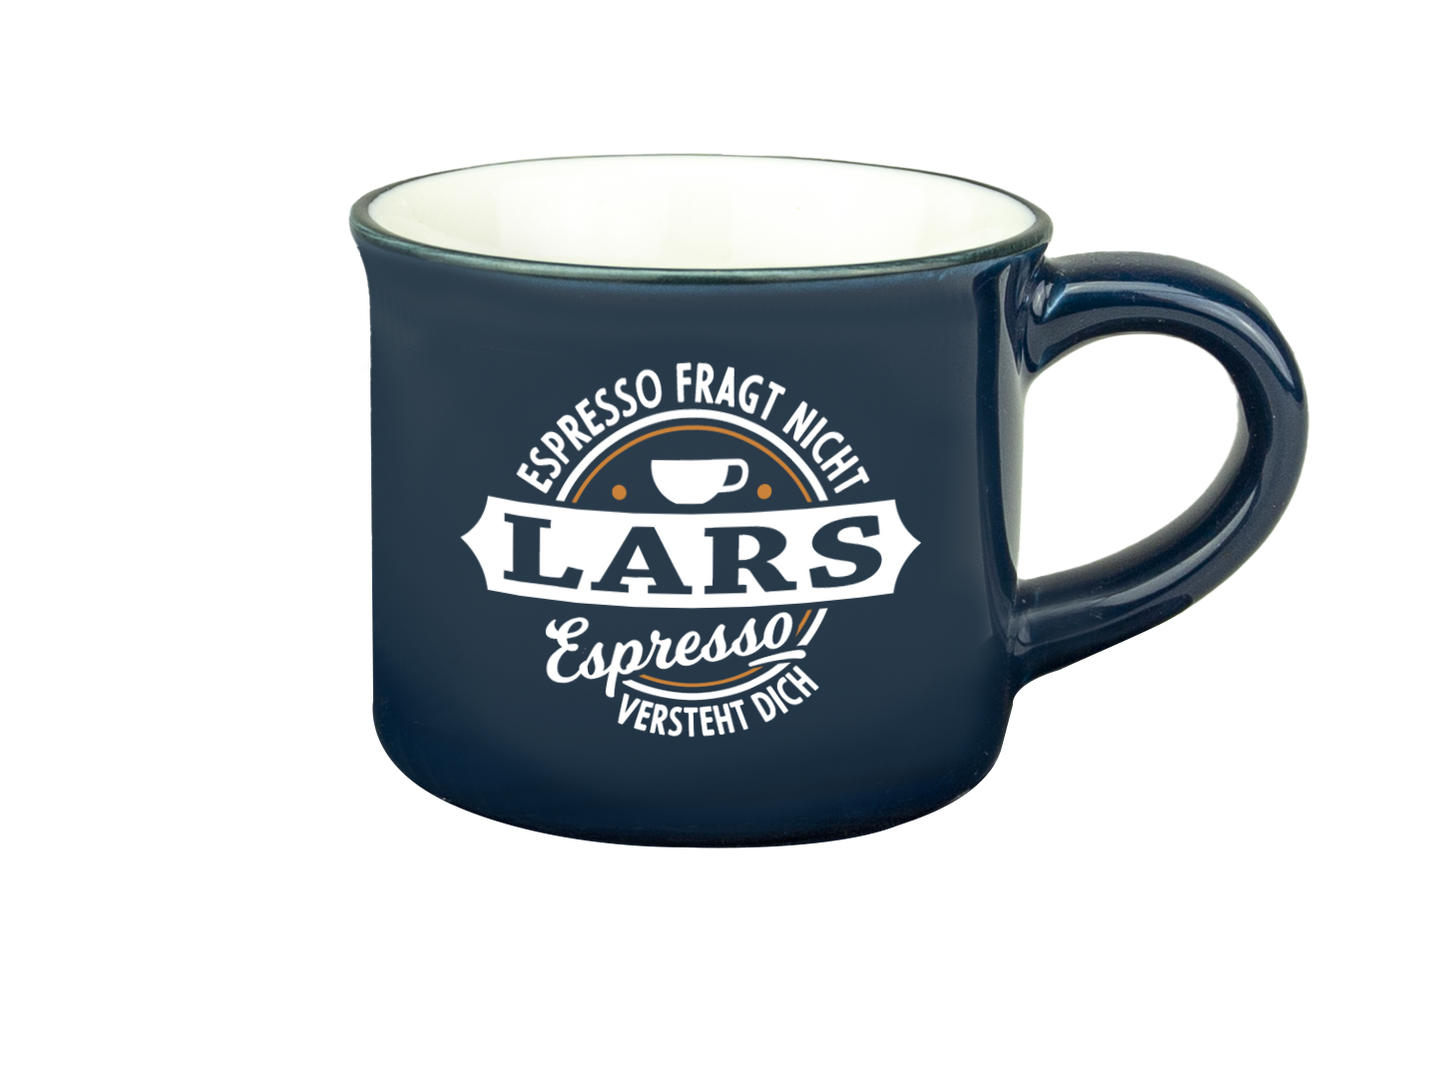 H & H Espresso-Tasse - Espresso fragt nicht Lars Espresso versteht Dich